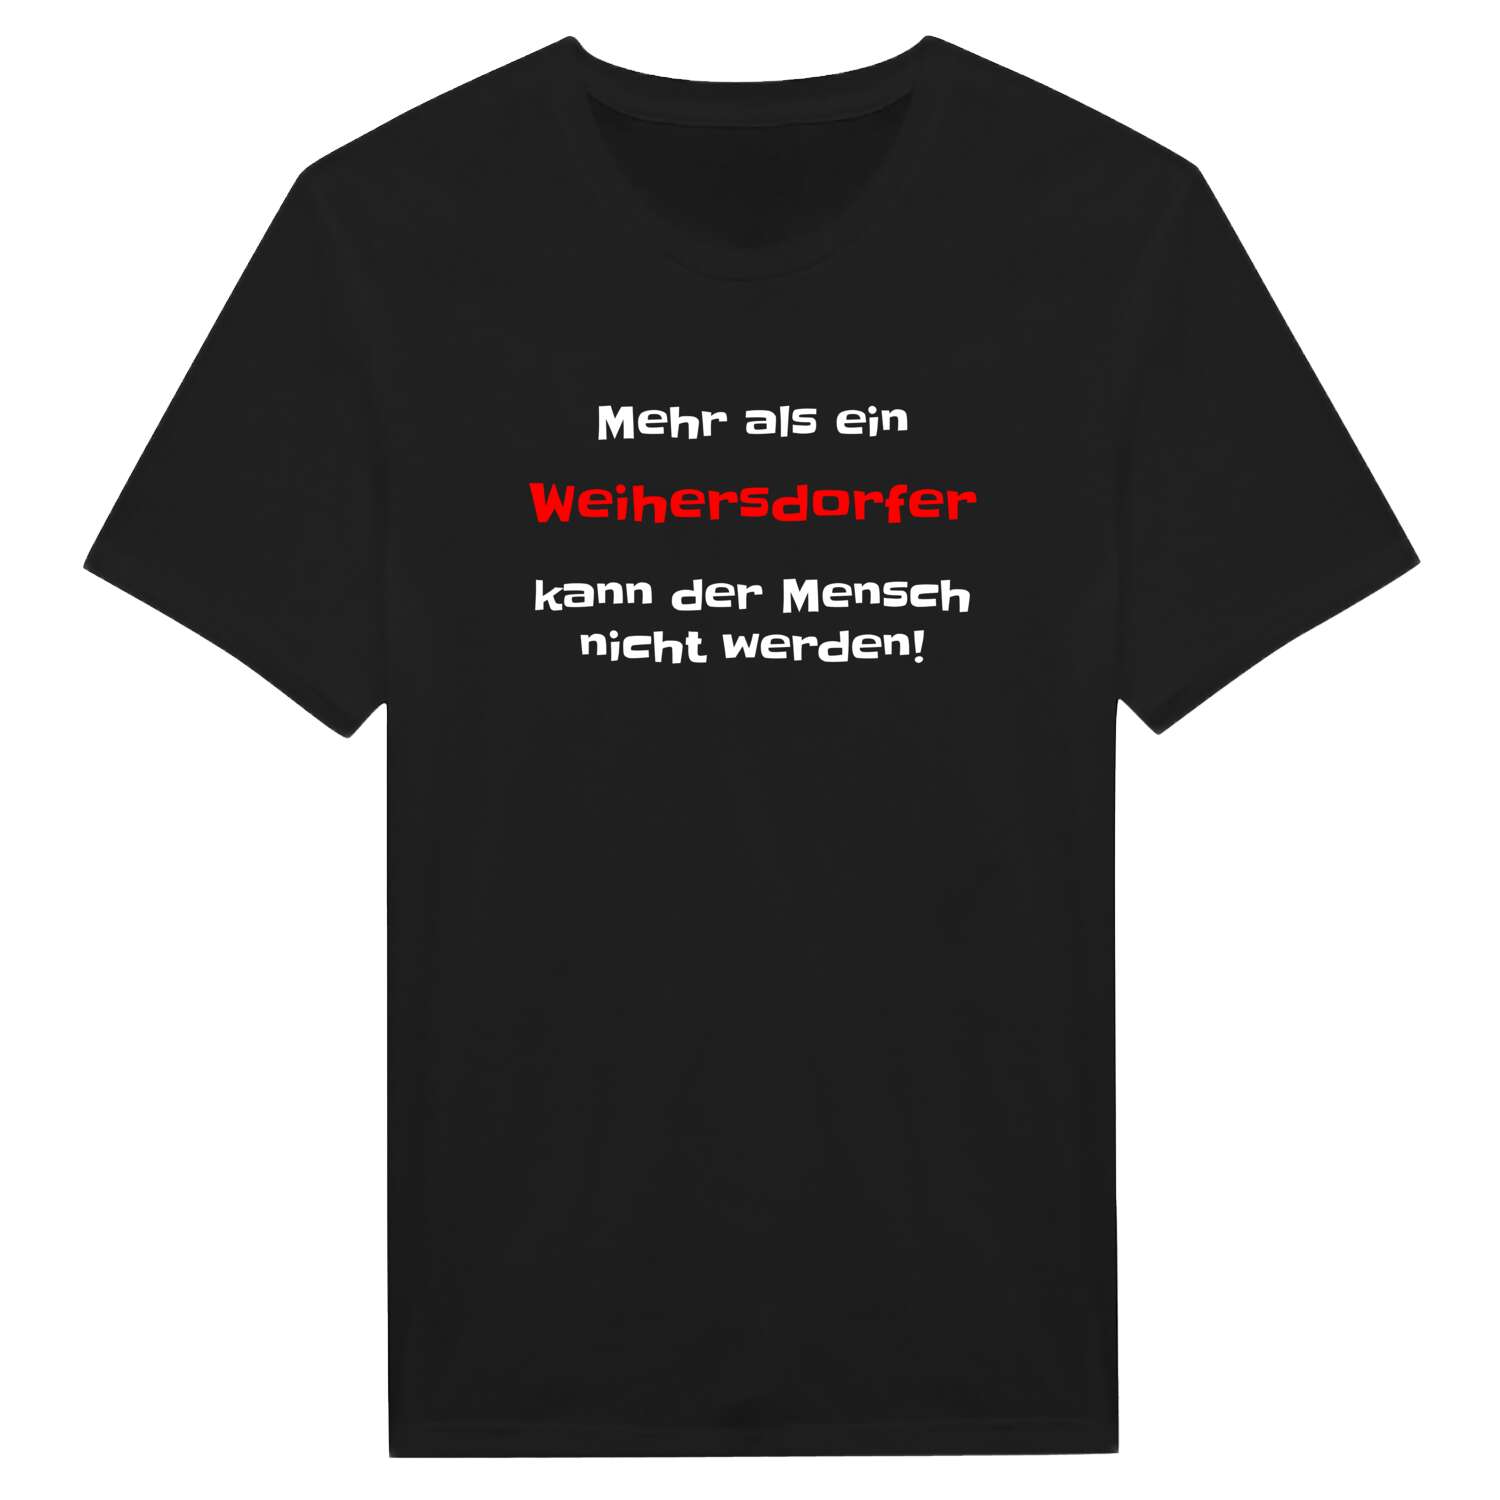 Weihersdorf T-Shirt »Mehr als ein«